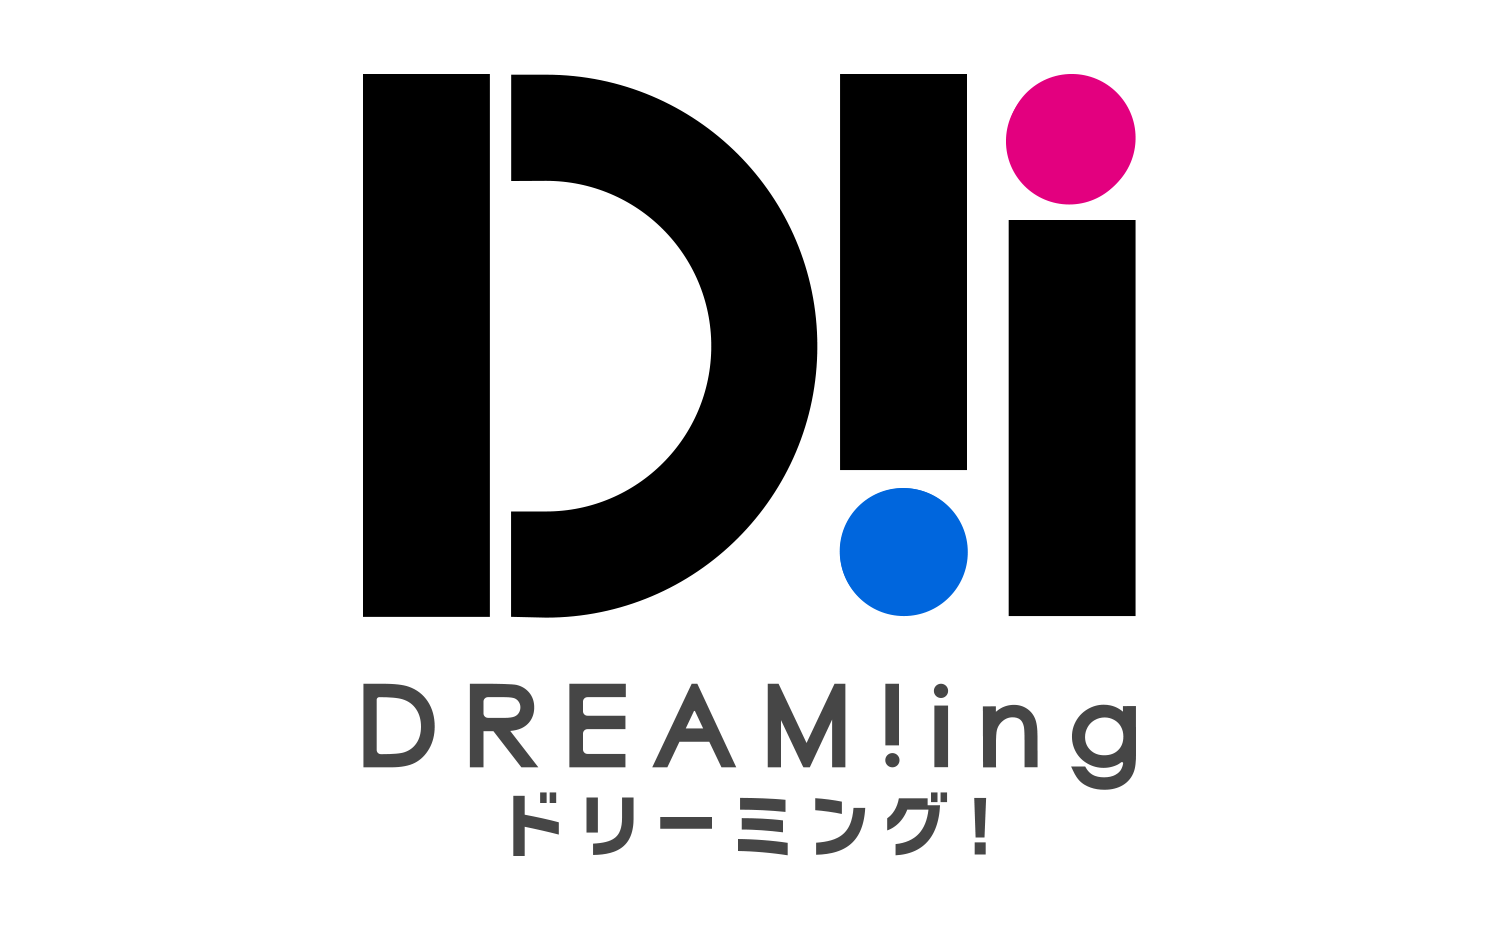 11 発売 ドラマcd Dream Ing さらば ペア解消試験 のジャケットイラスト を公開 株式会社アニメイトホールディングスのプレスリリース